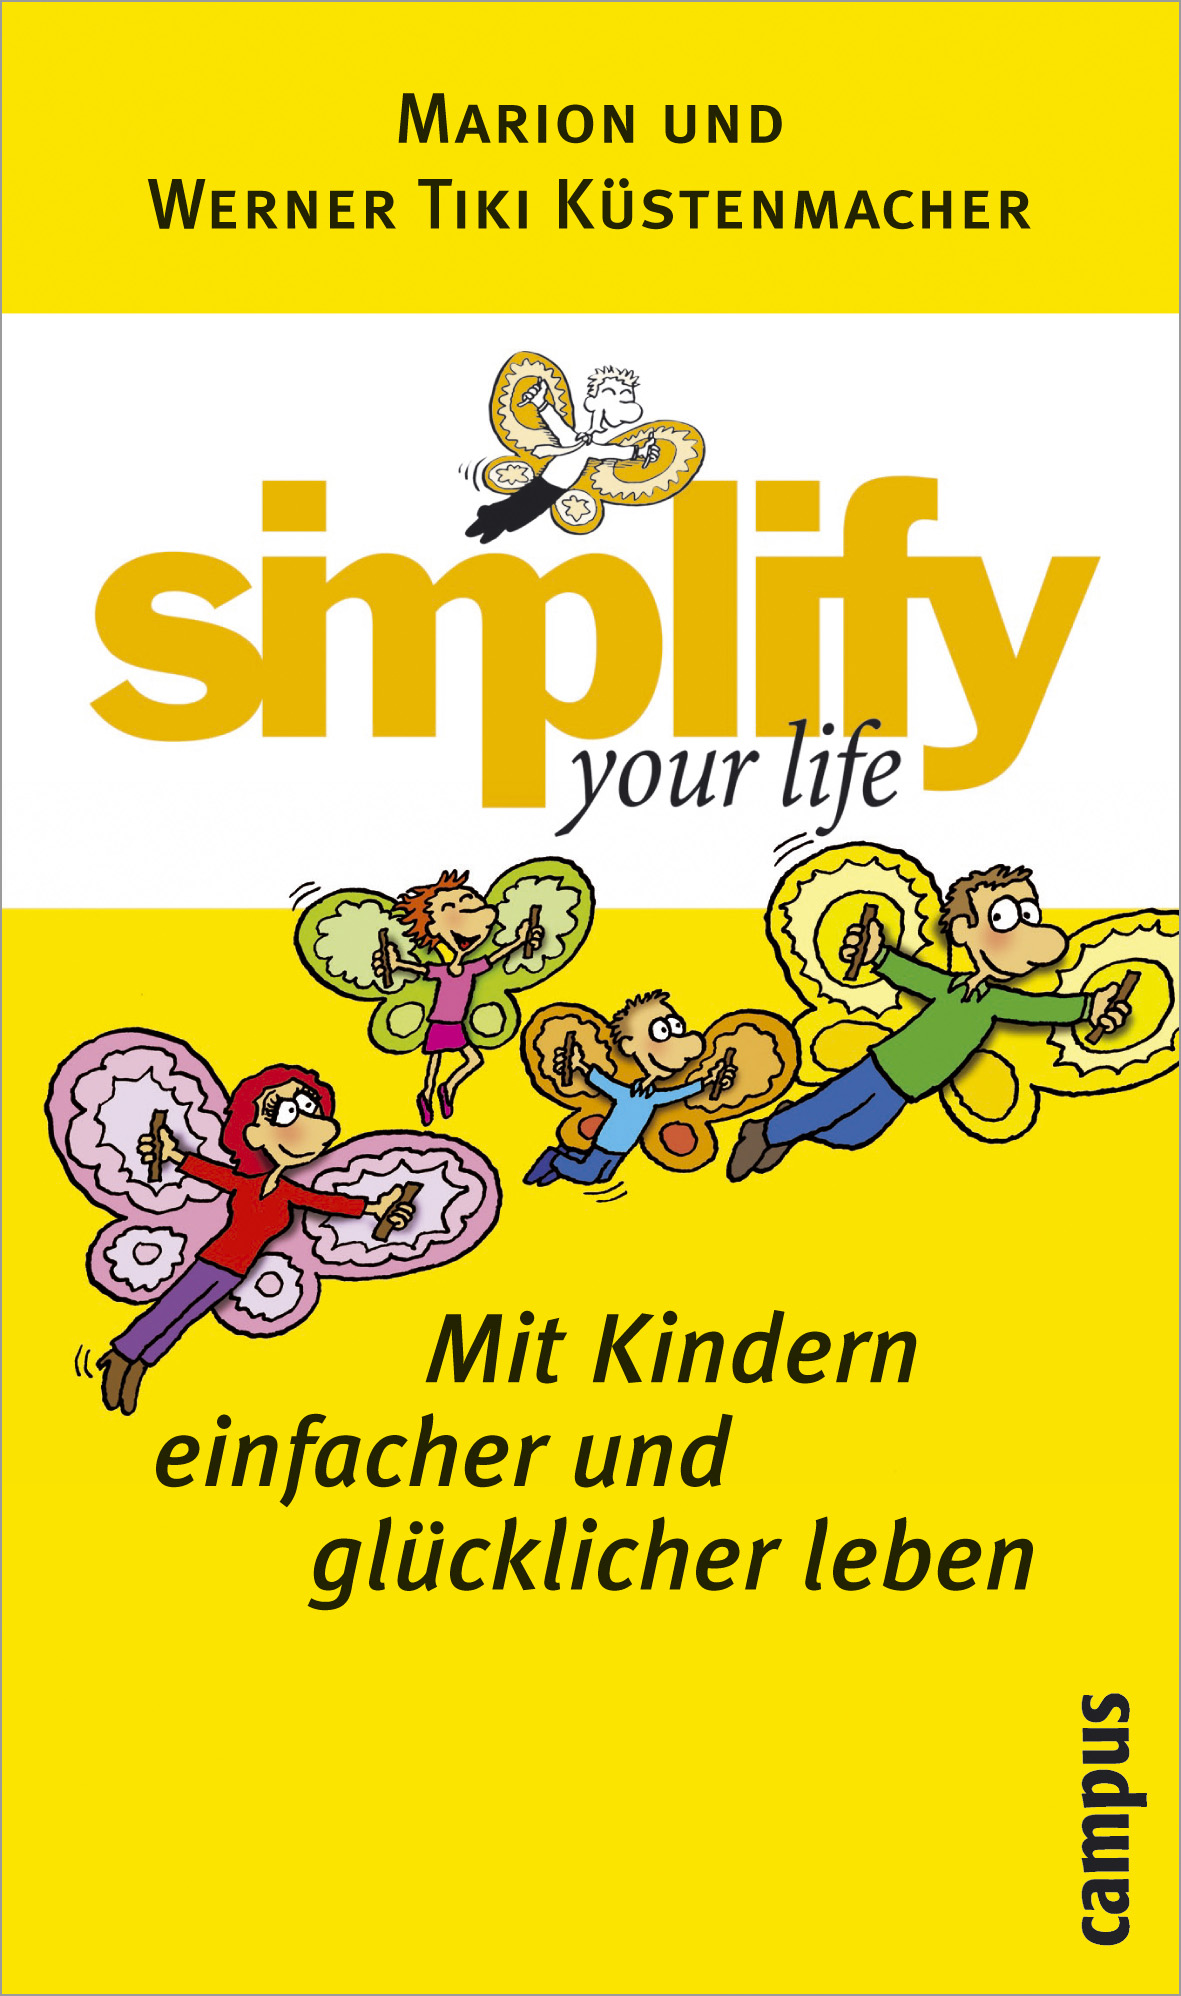 simplify your life - Mit Kindern einfacher und glücklicher leben